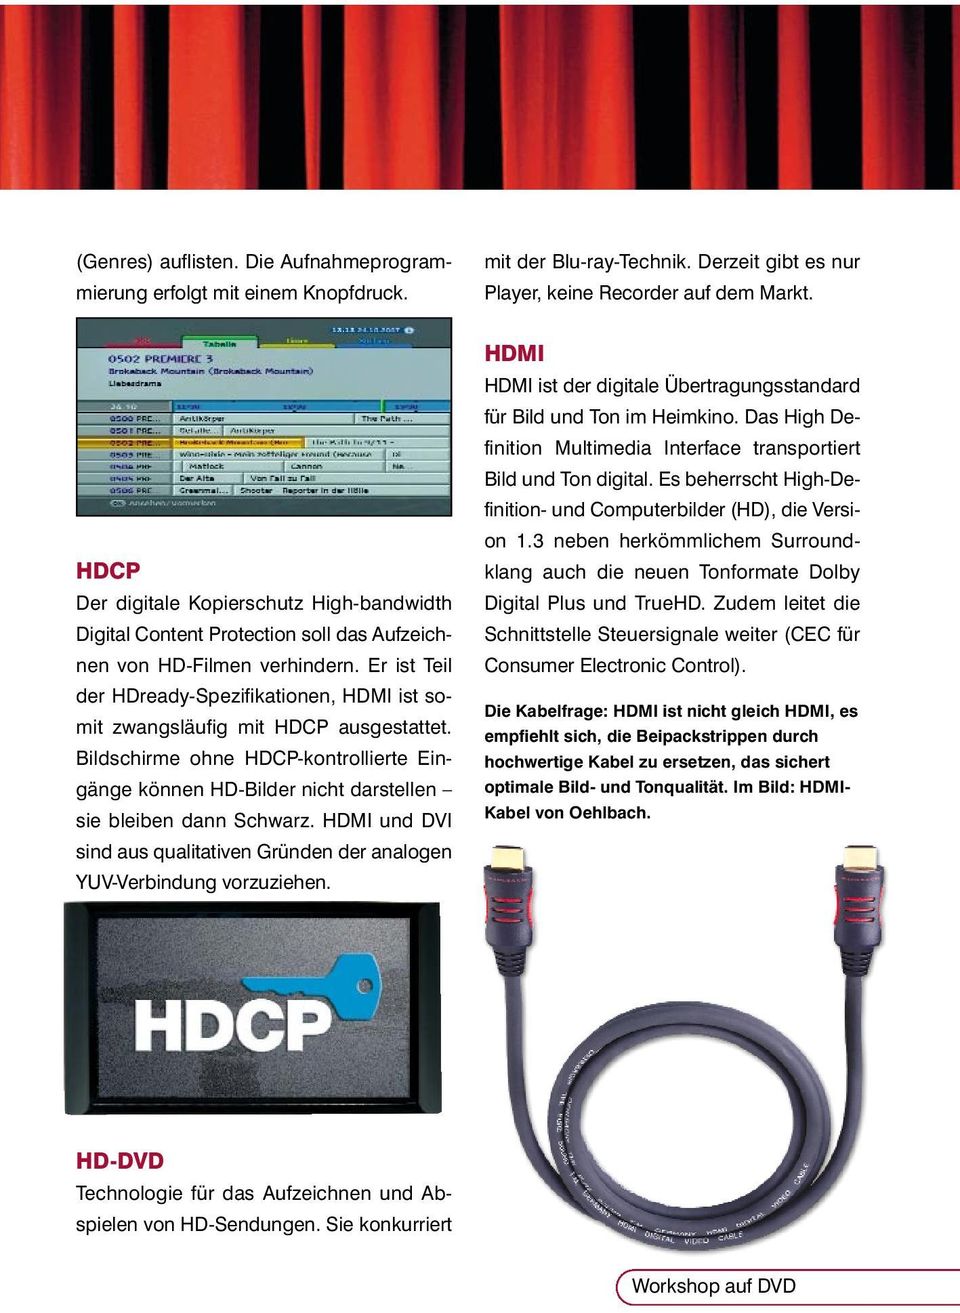 Er ist Teil der HDready-Spezifikationen, HDMI ist somit zwangsläufig mit HDCP ausgestattet. Bildschirme ohne HDCP-kontrollierte Eingänge können HD-Bilder nicht darstellen sie bleiben dann Schwarz.